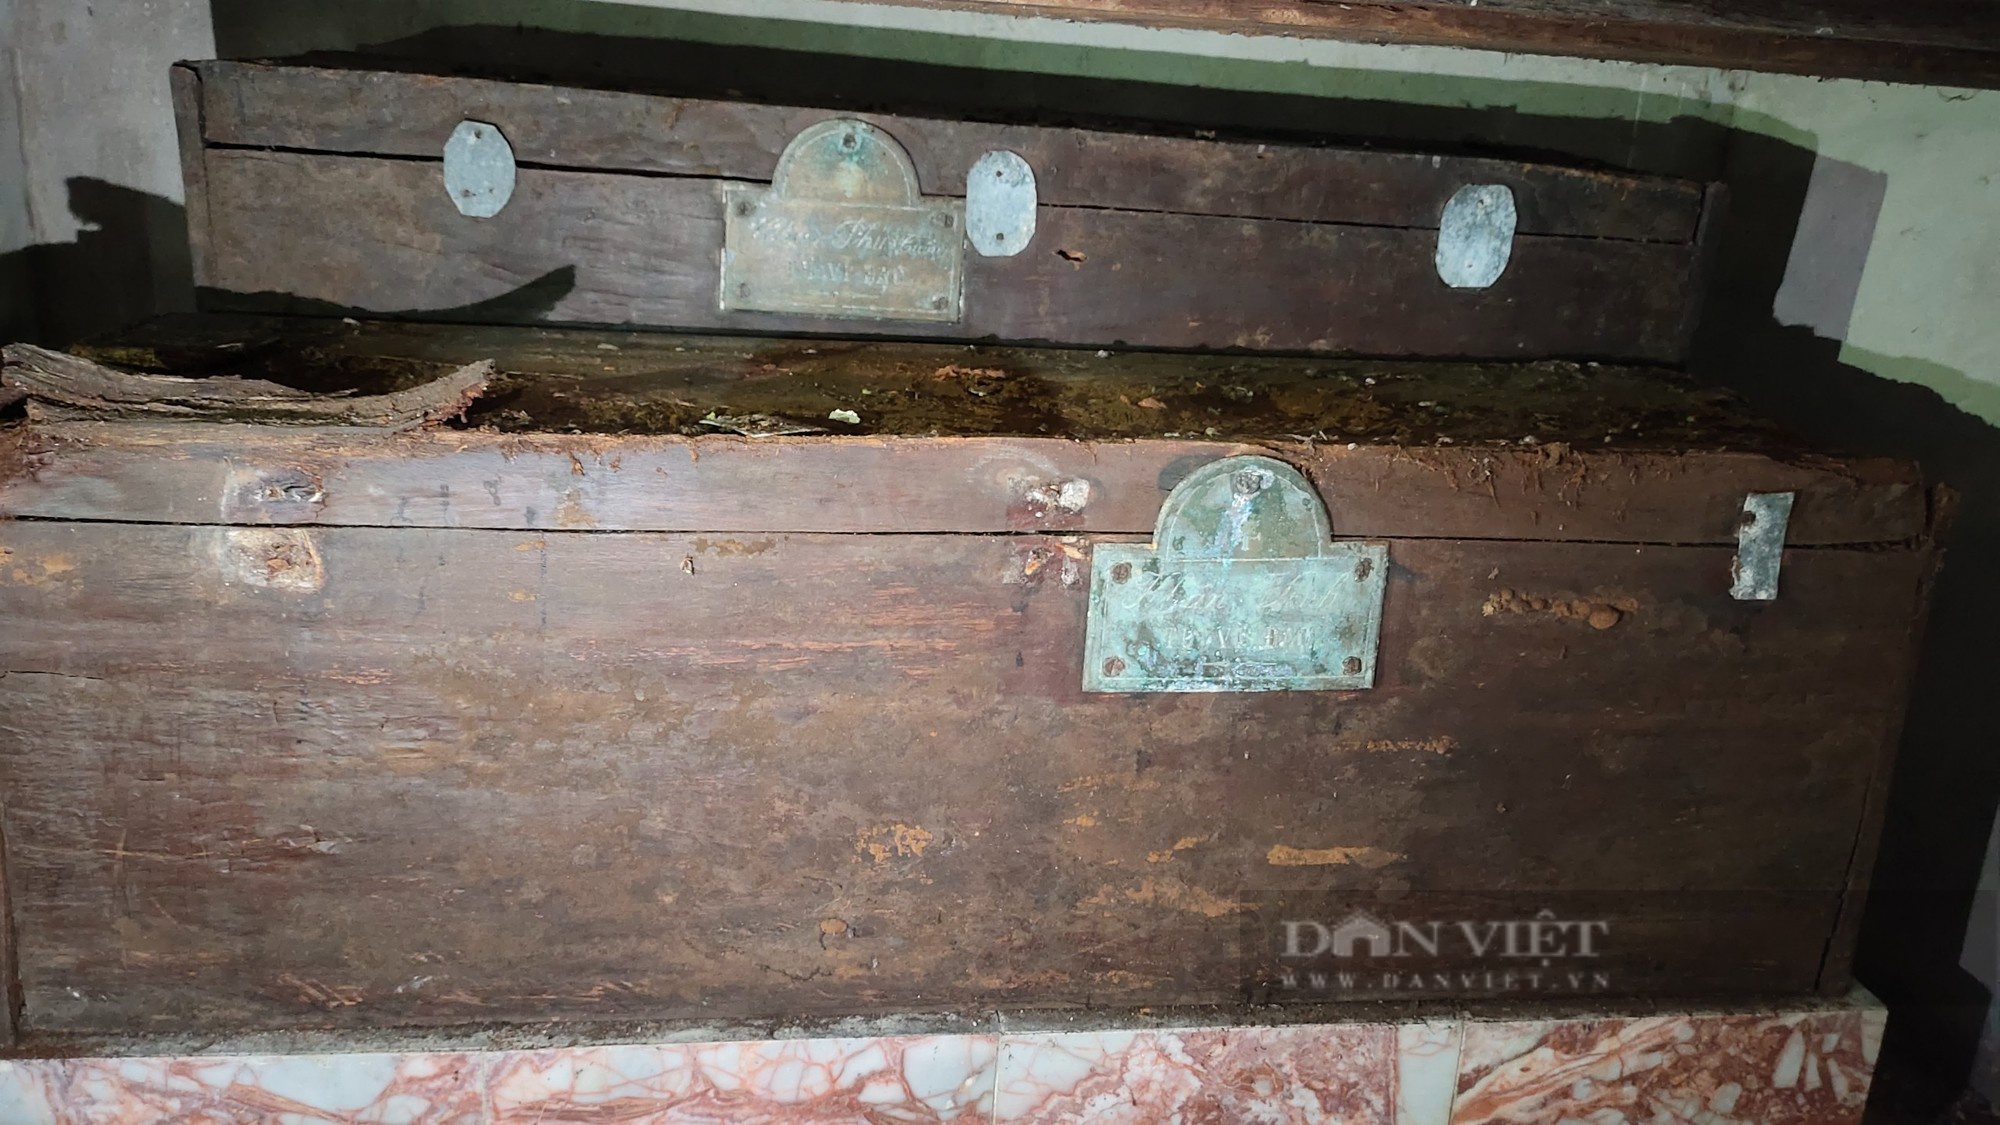 Bí ẩn về 2 bộ hài cốt đang được lưu giữ tại nhà thờ hơn 100 tuổi ở Ninh Bình - Ảnh 3.